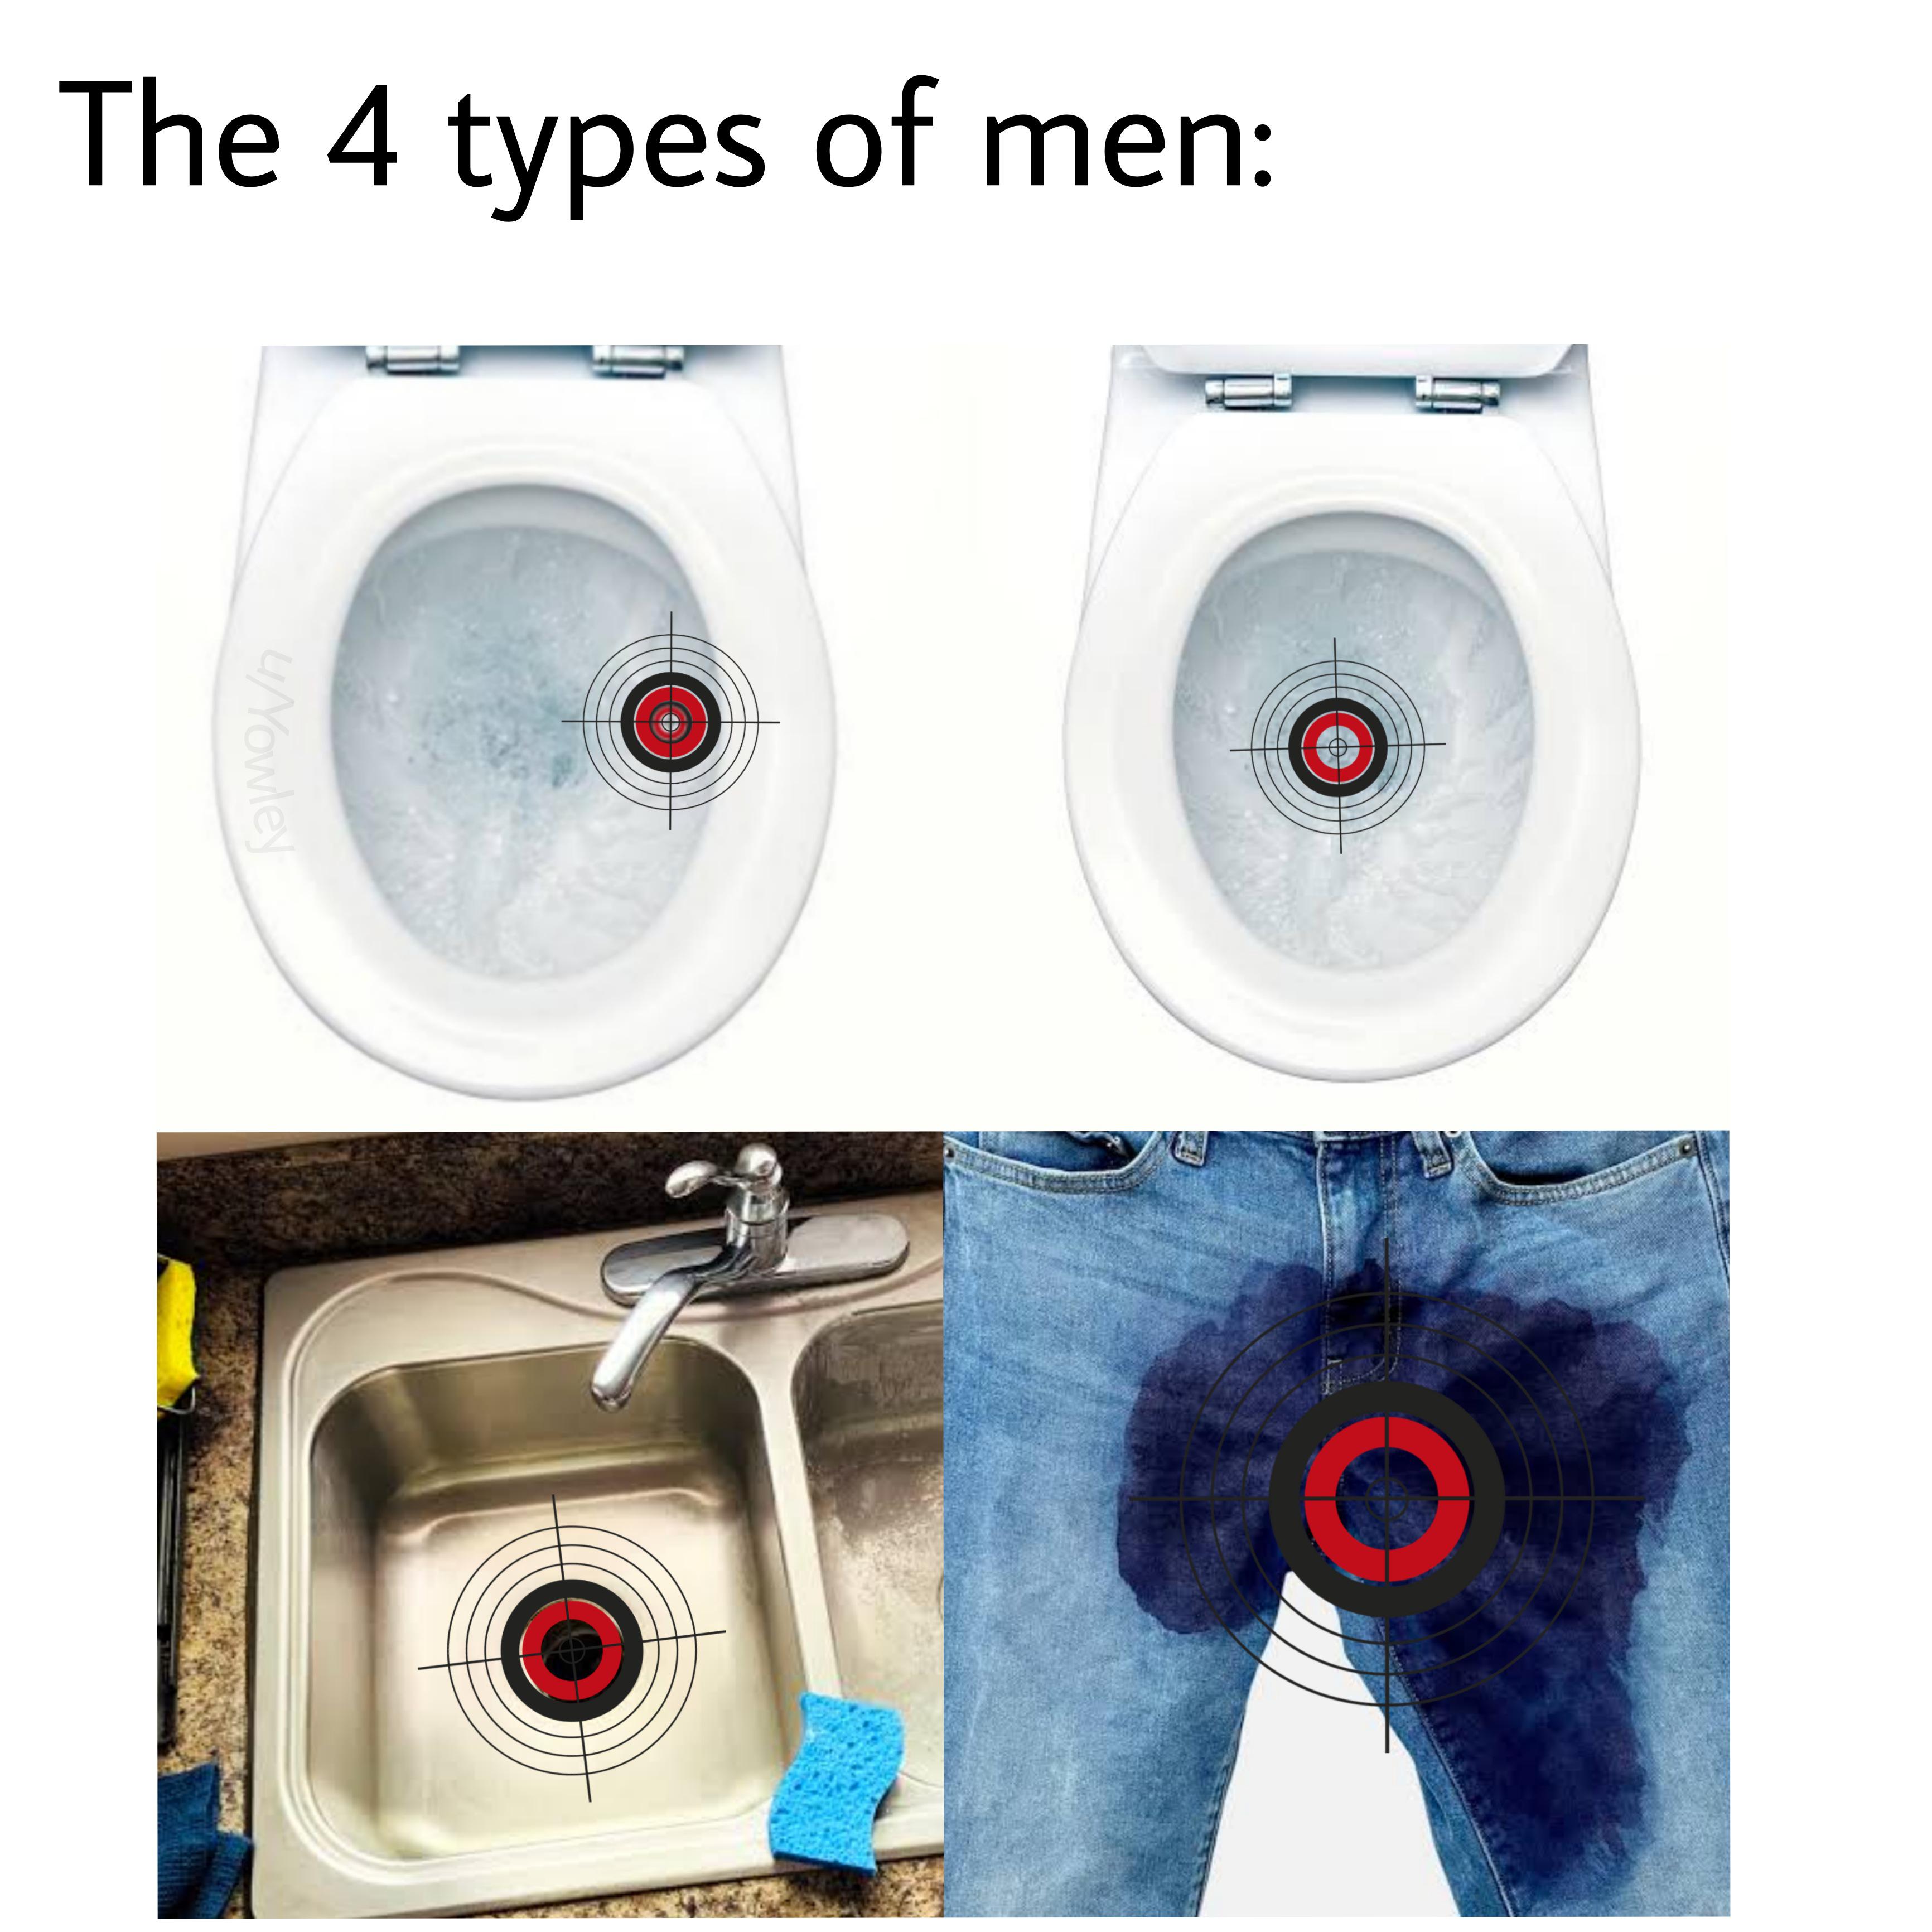 toilet seat - The 4 types of men